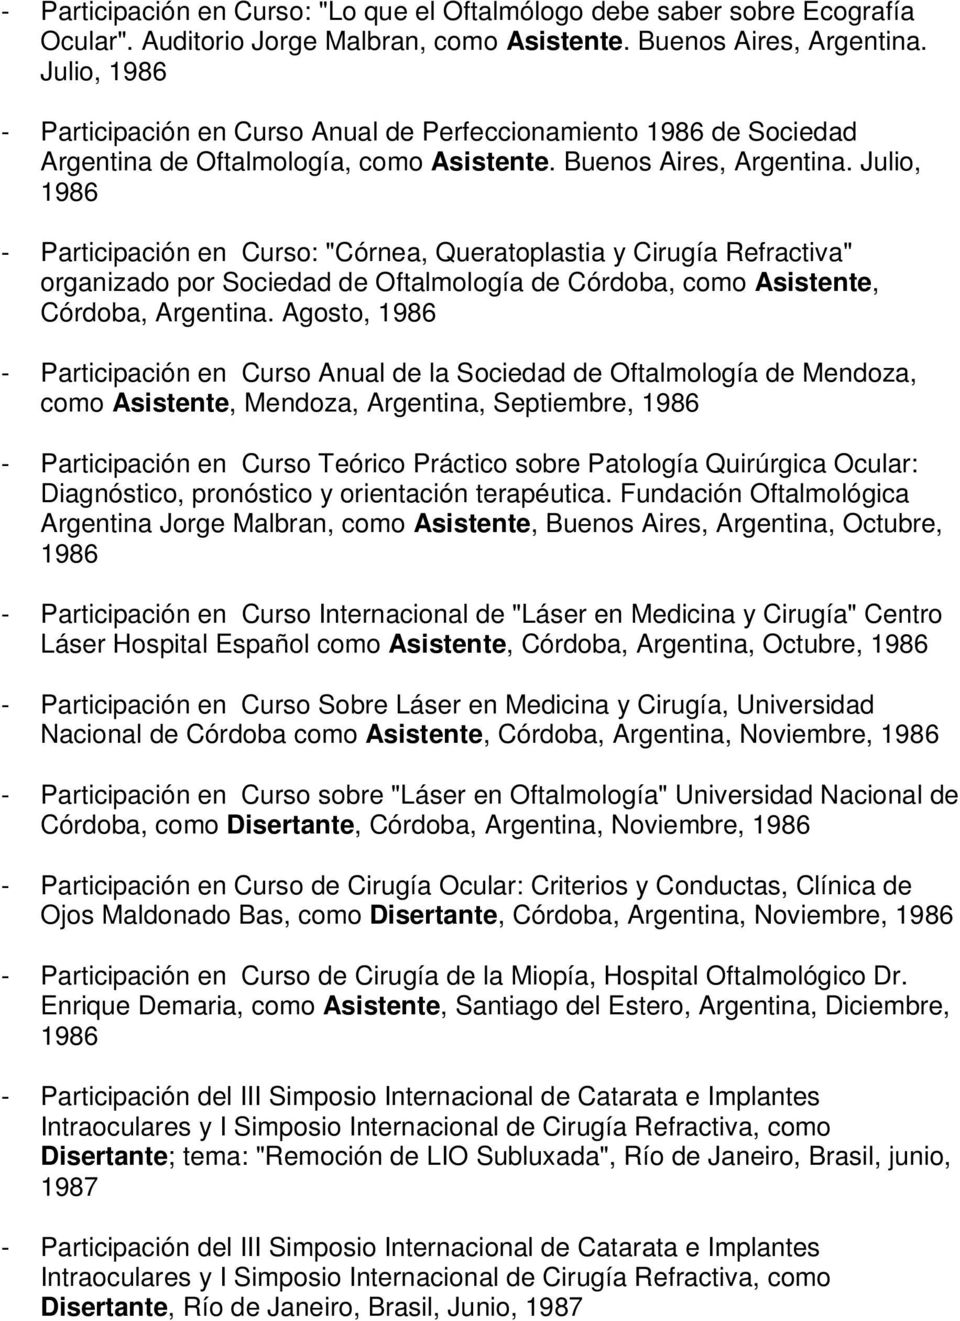 Julio, 1986 - Participación en Curso: "Córnea, Queratoplastia y Cirugía Refractiva" organizado por Sociedad de Oftalmología de Córdoba, como Asistente, Córdoba, Argentina.